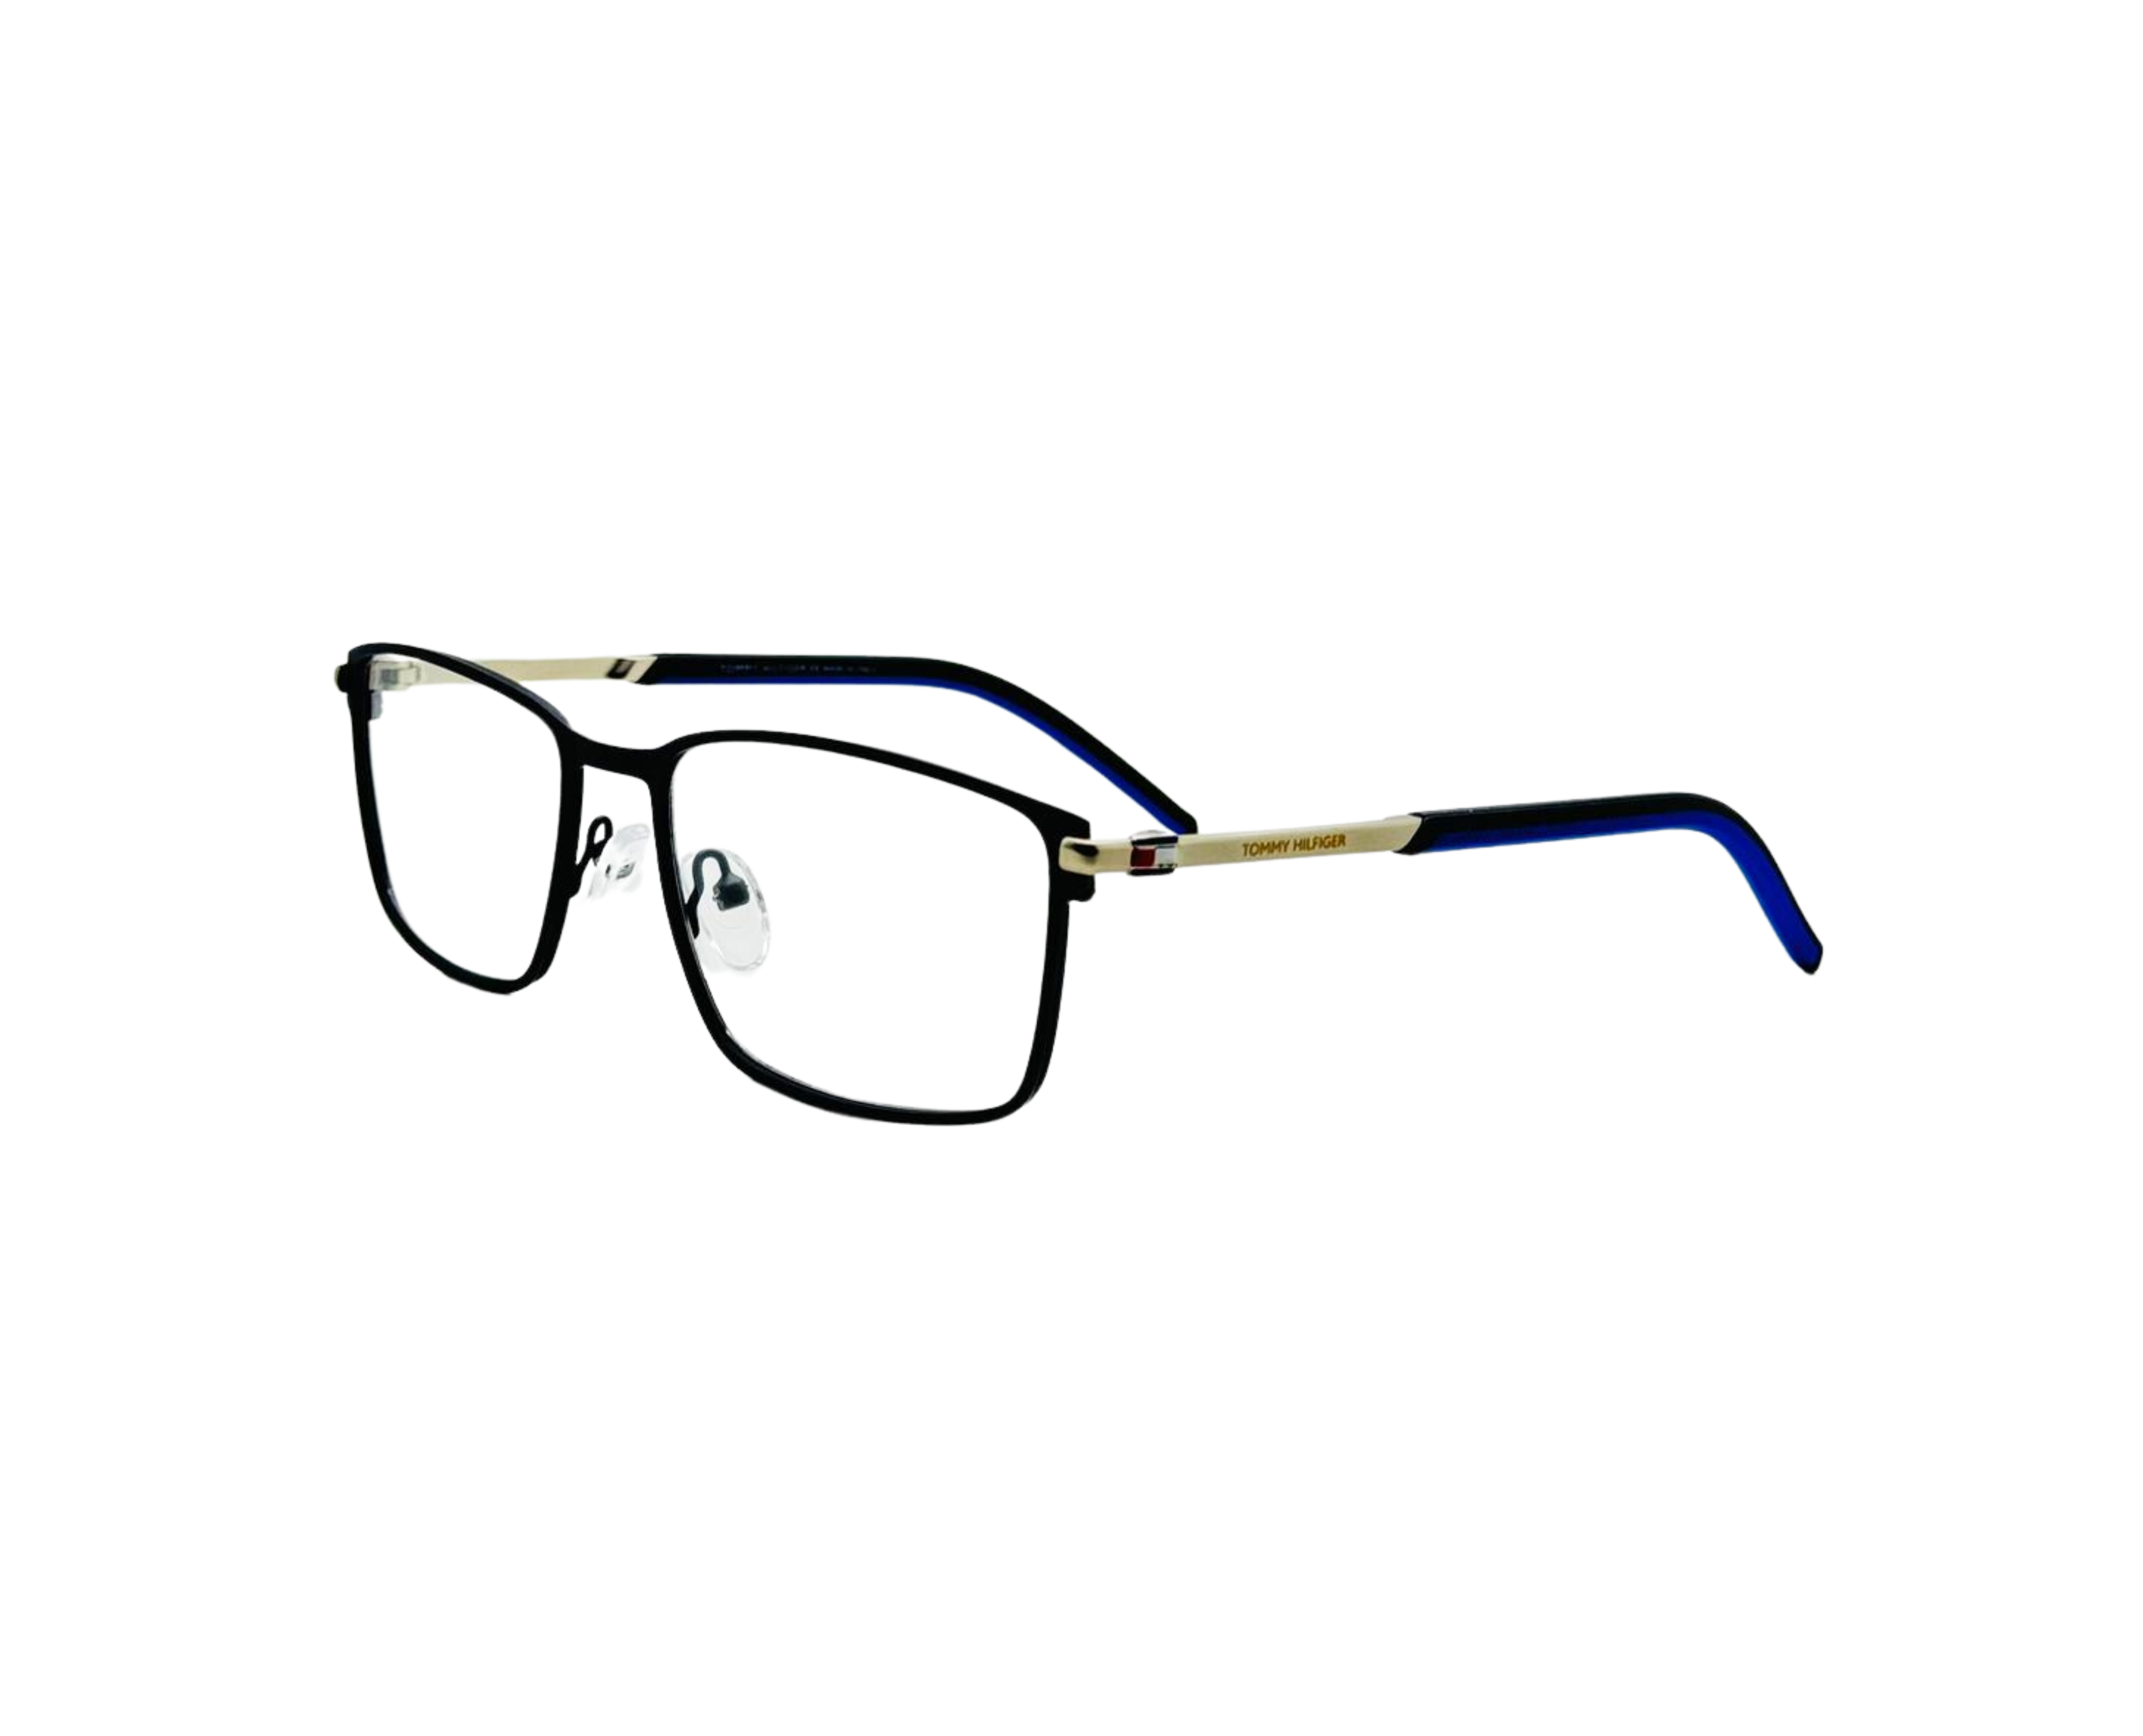 NS Luxury - 1991 - Black - Eyeglasses